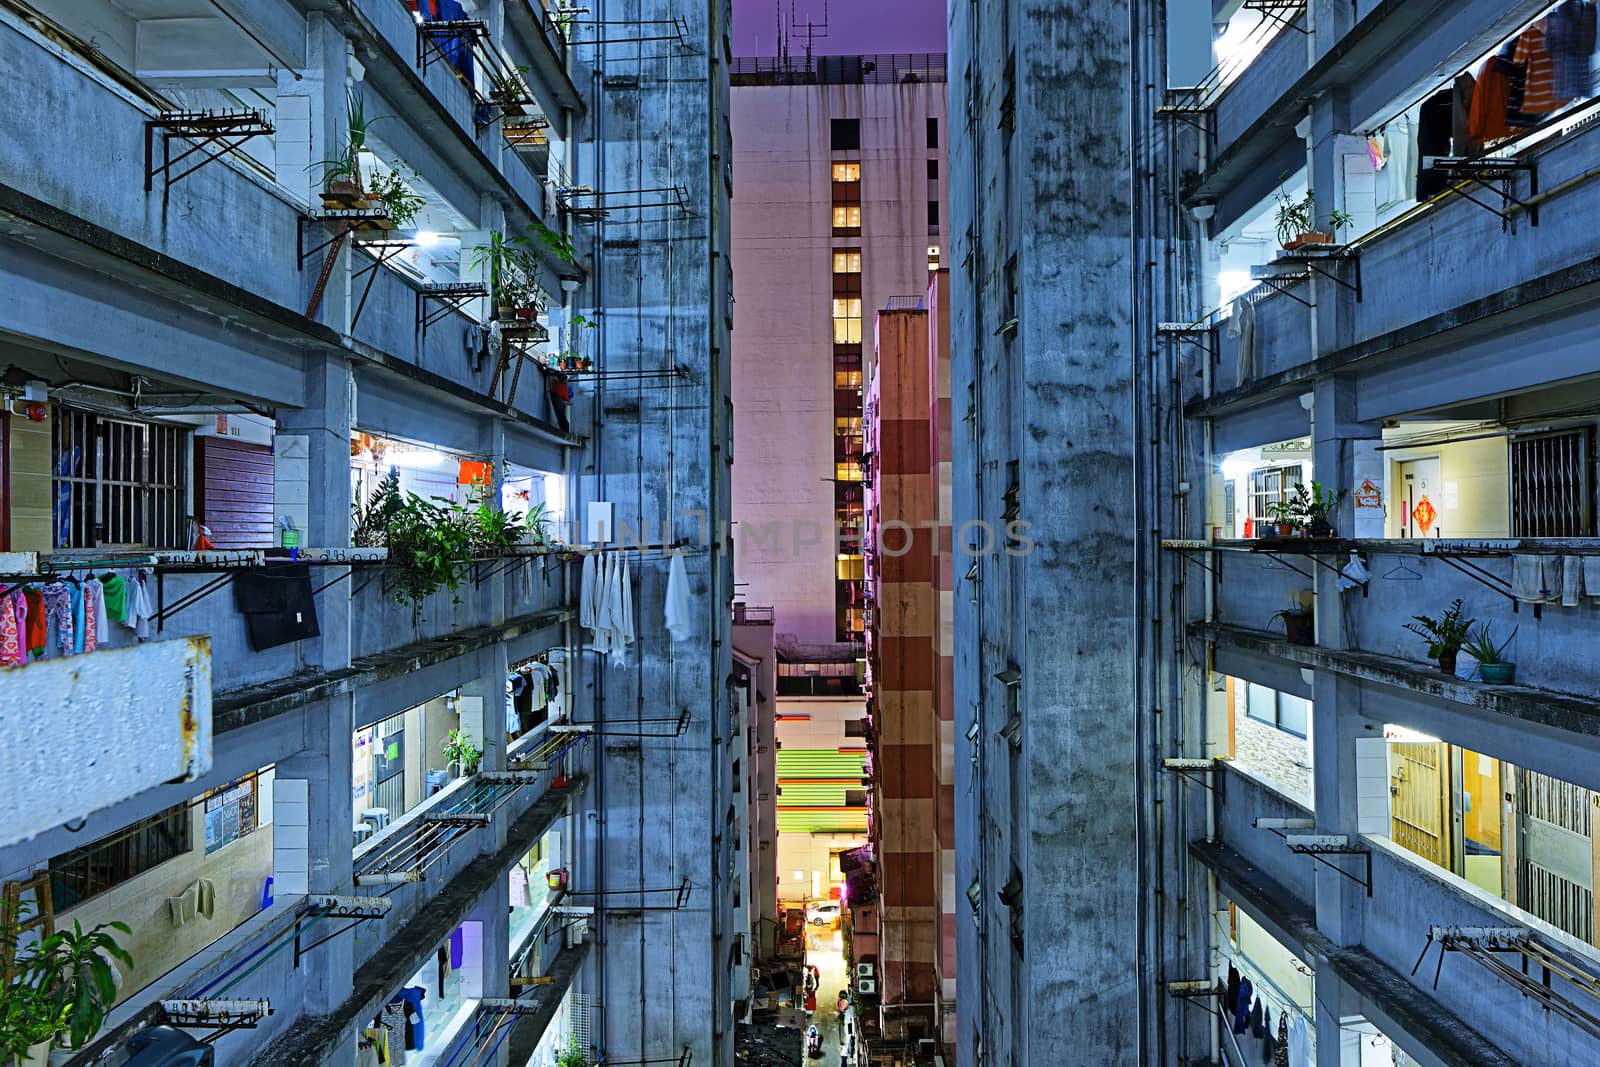 Hong kong slum downtown area at night